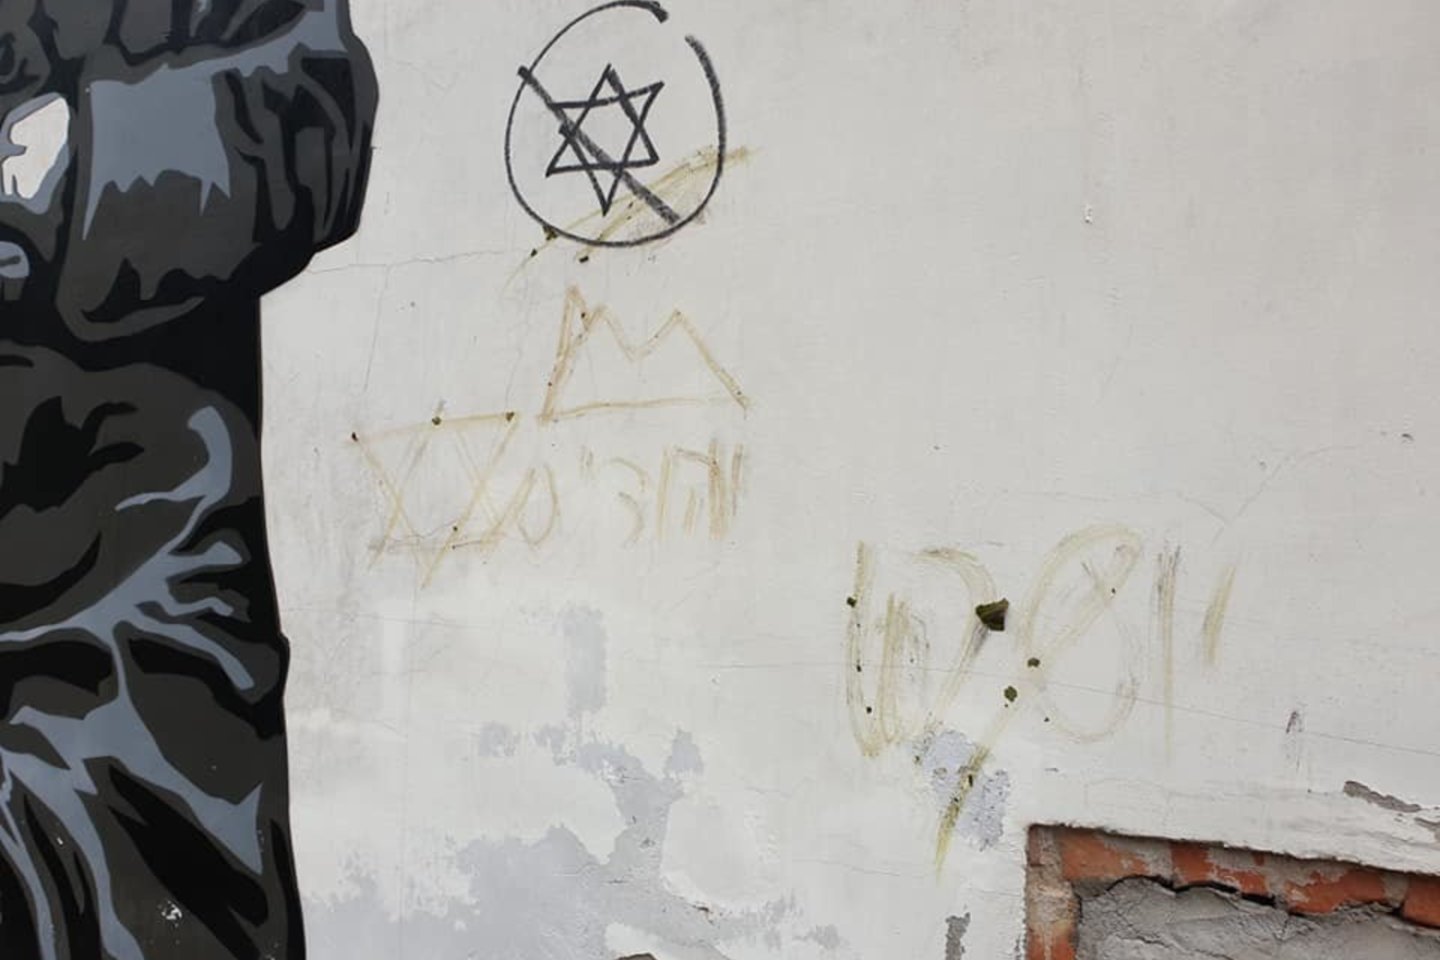 Antisemitinis išpuolis Vilniuje: ieškomi liudininkai, galintys suteikti informacijos apie vandalus. <br> Facebook/Sienos prisimena / Walls that remember nuotr.